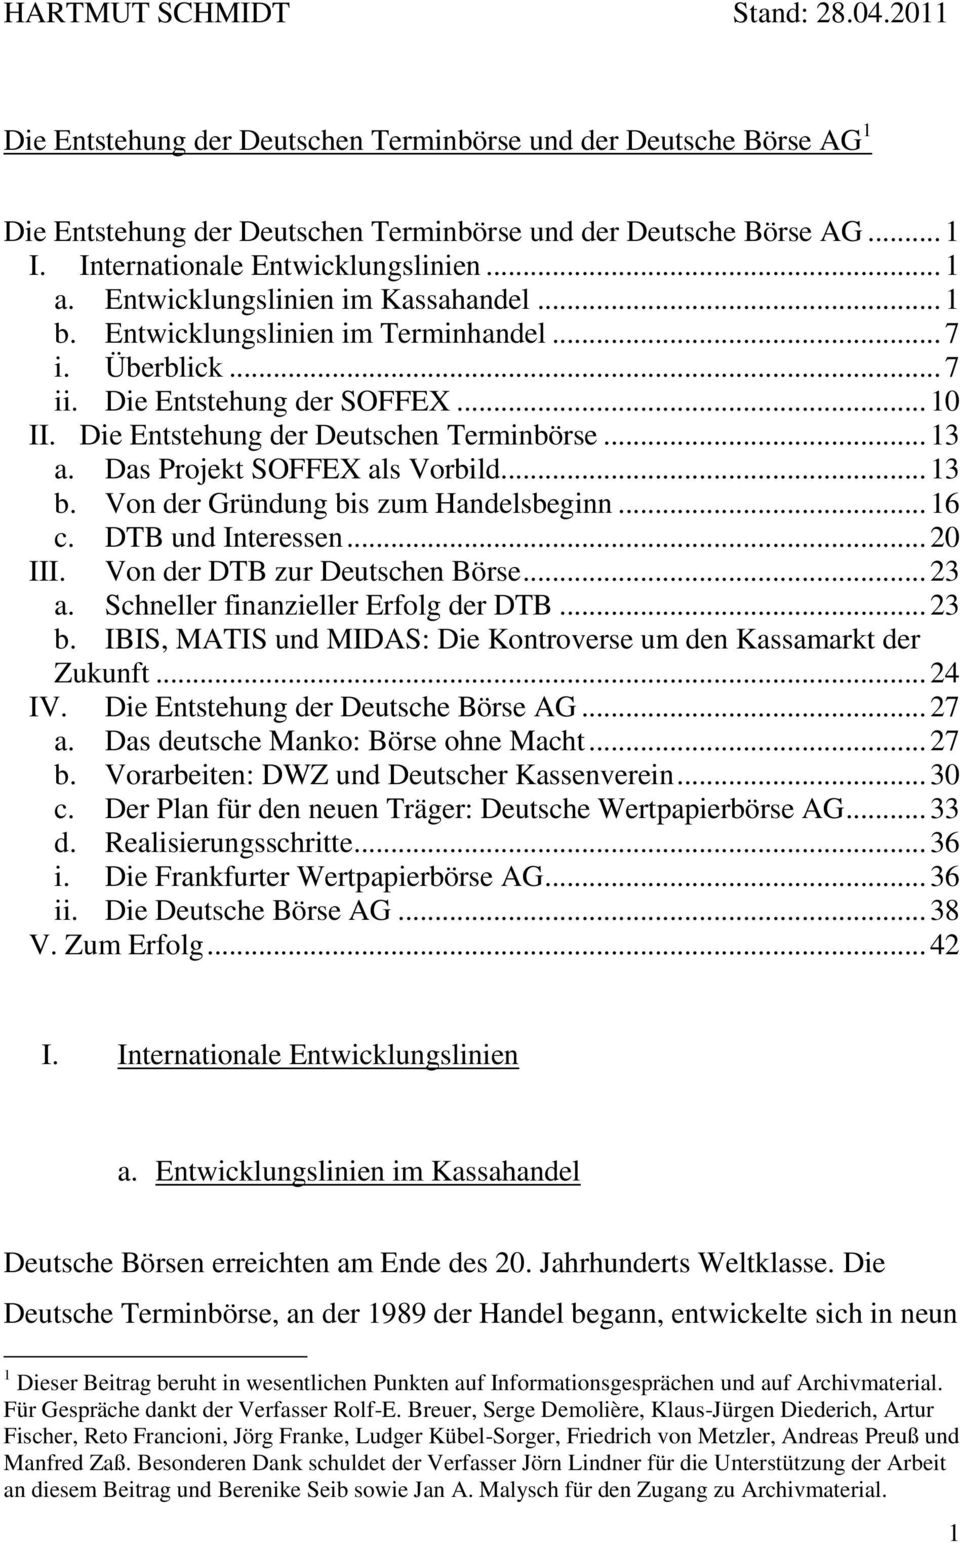 Die Entstehung der Deutschen Terminbörse... 13 a. Das Projekt SOFFEX als Vorbild... 13 b. Von der Gründung bis zum Handelsbeginn... 16 c. DTB und Interessen... 20 III. Von der DTB zur Deutschen Börse.